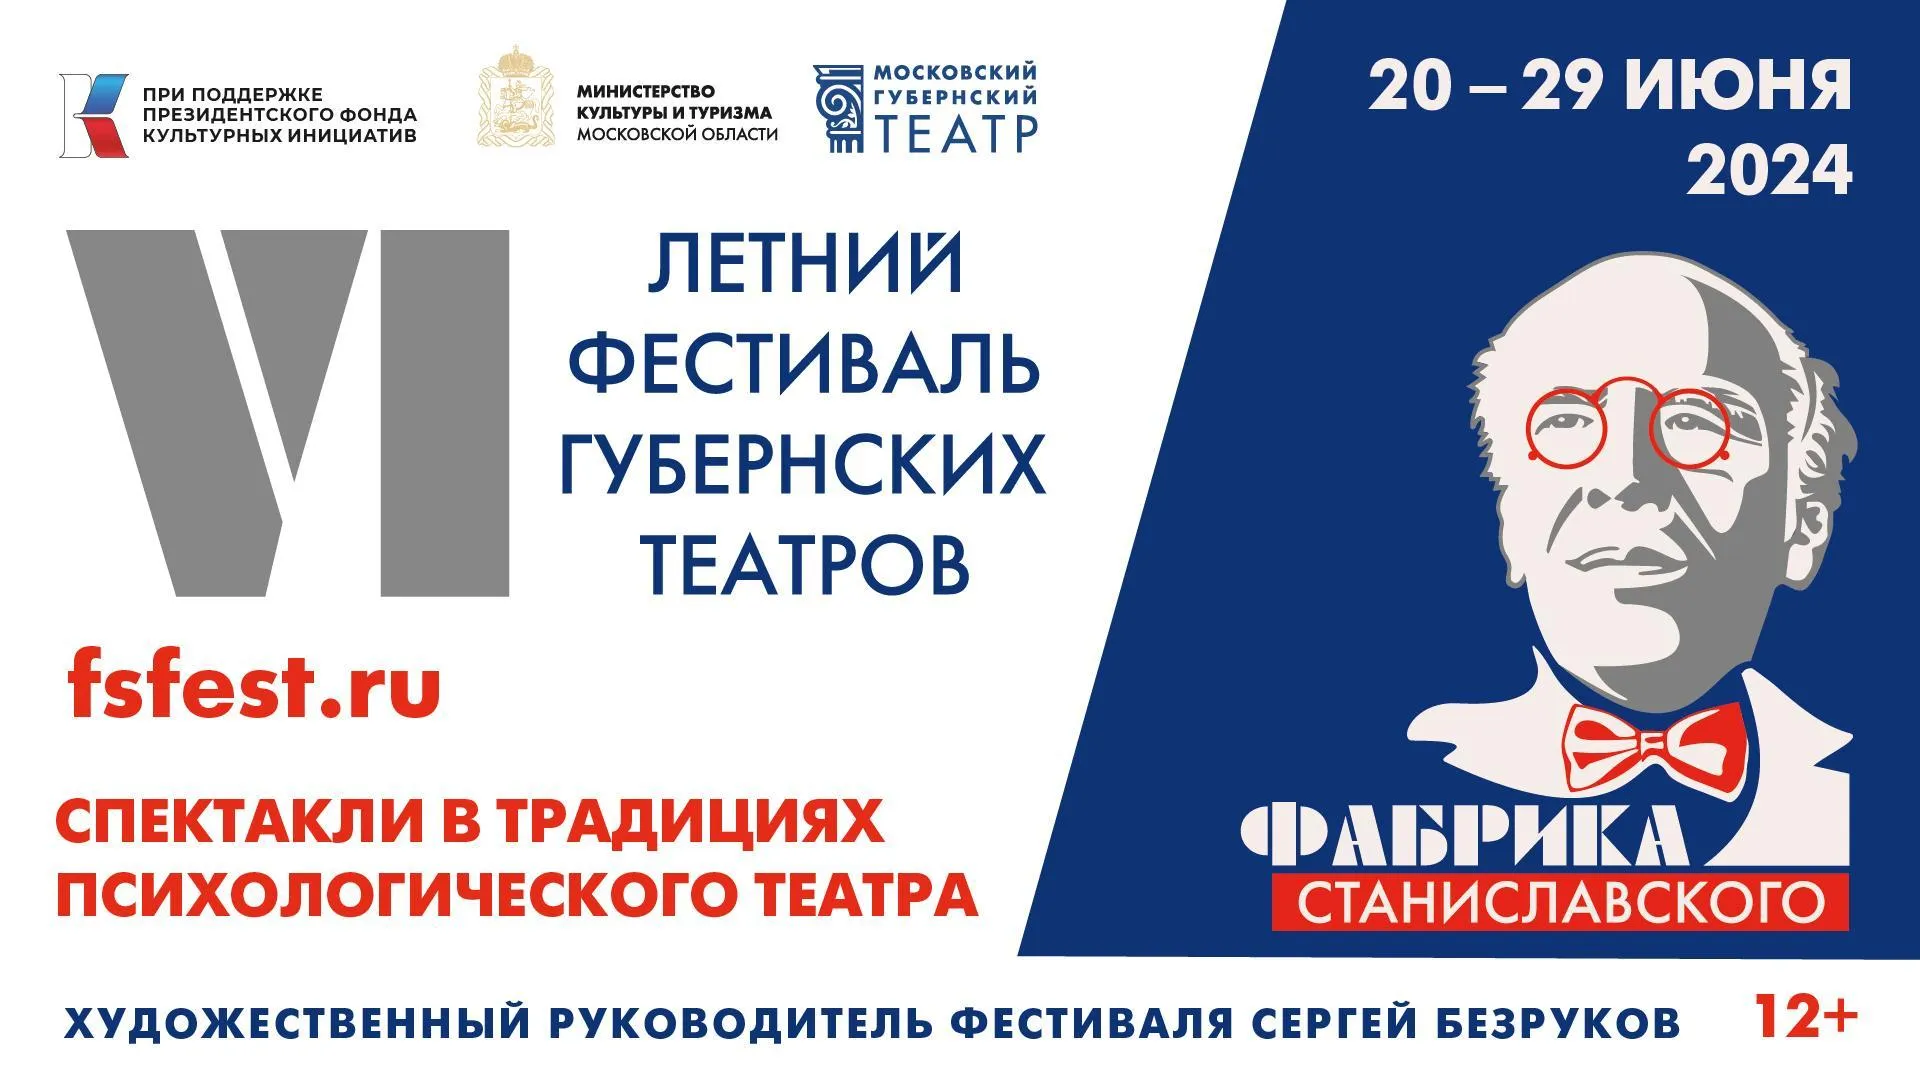 Театральный фестиваль «Фабрика Станиславского» стартует в Москве 20 июня